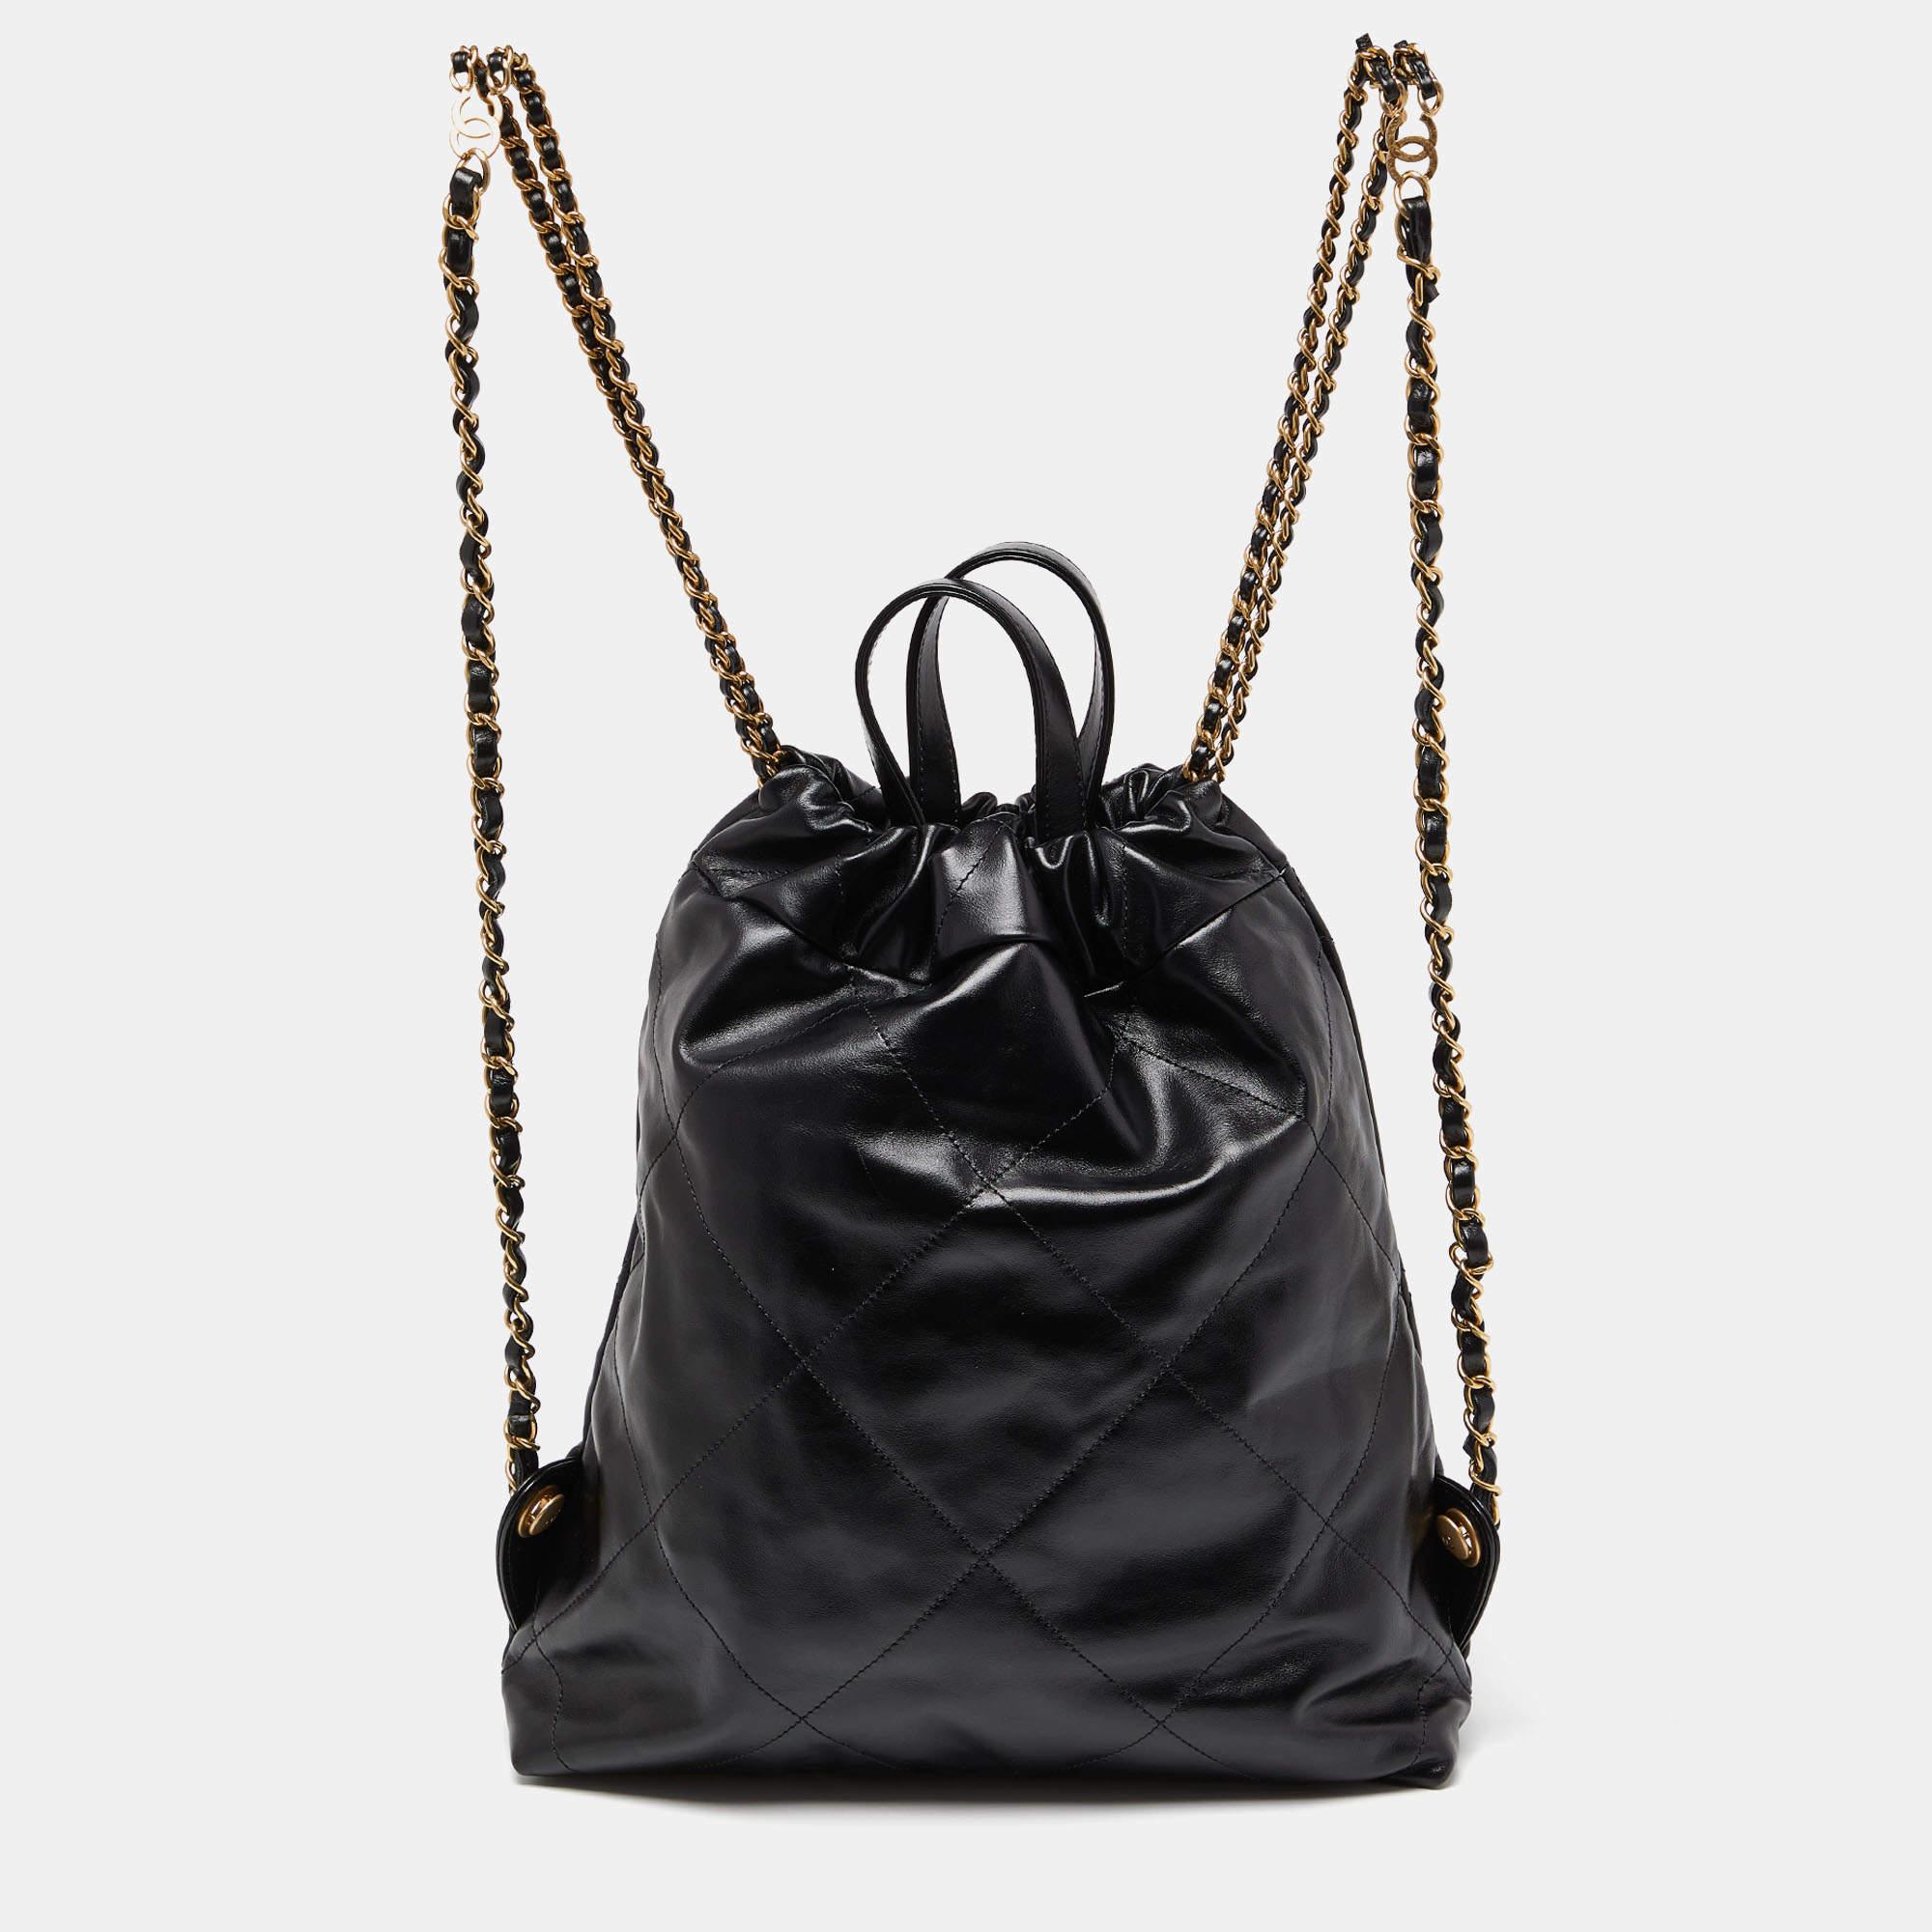 Les sacs Chanel sont réputés pour leur design unique qui reflète l'élégance de la marque, et le savoir-faire immaculé de la marque permet à ses créations de durer saison après saison. Voici le superbe sac à dos Chanel 22, minutieusement confectionné